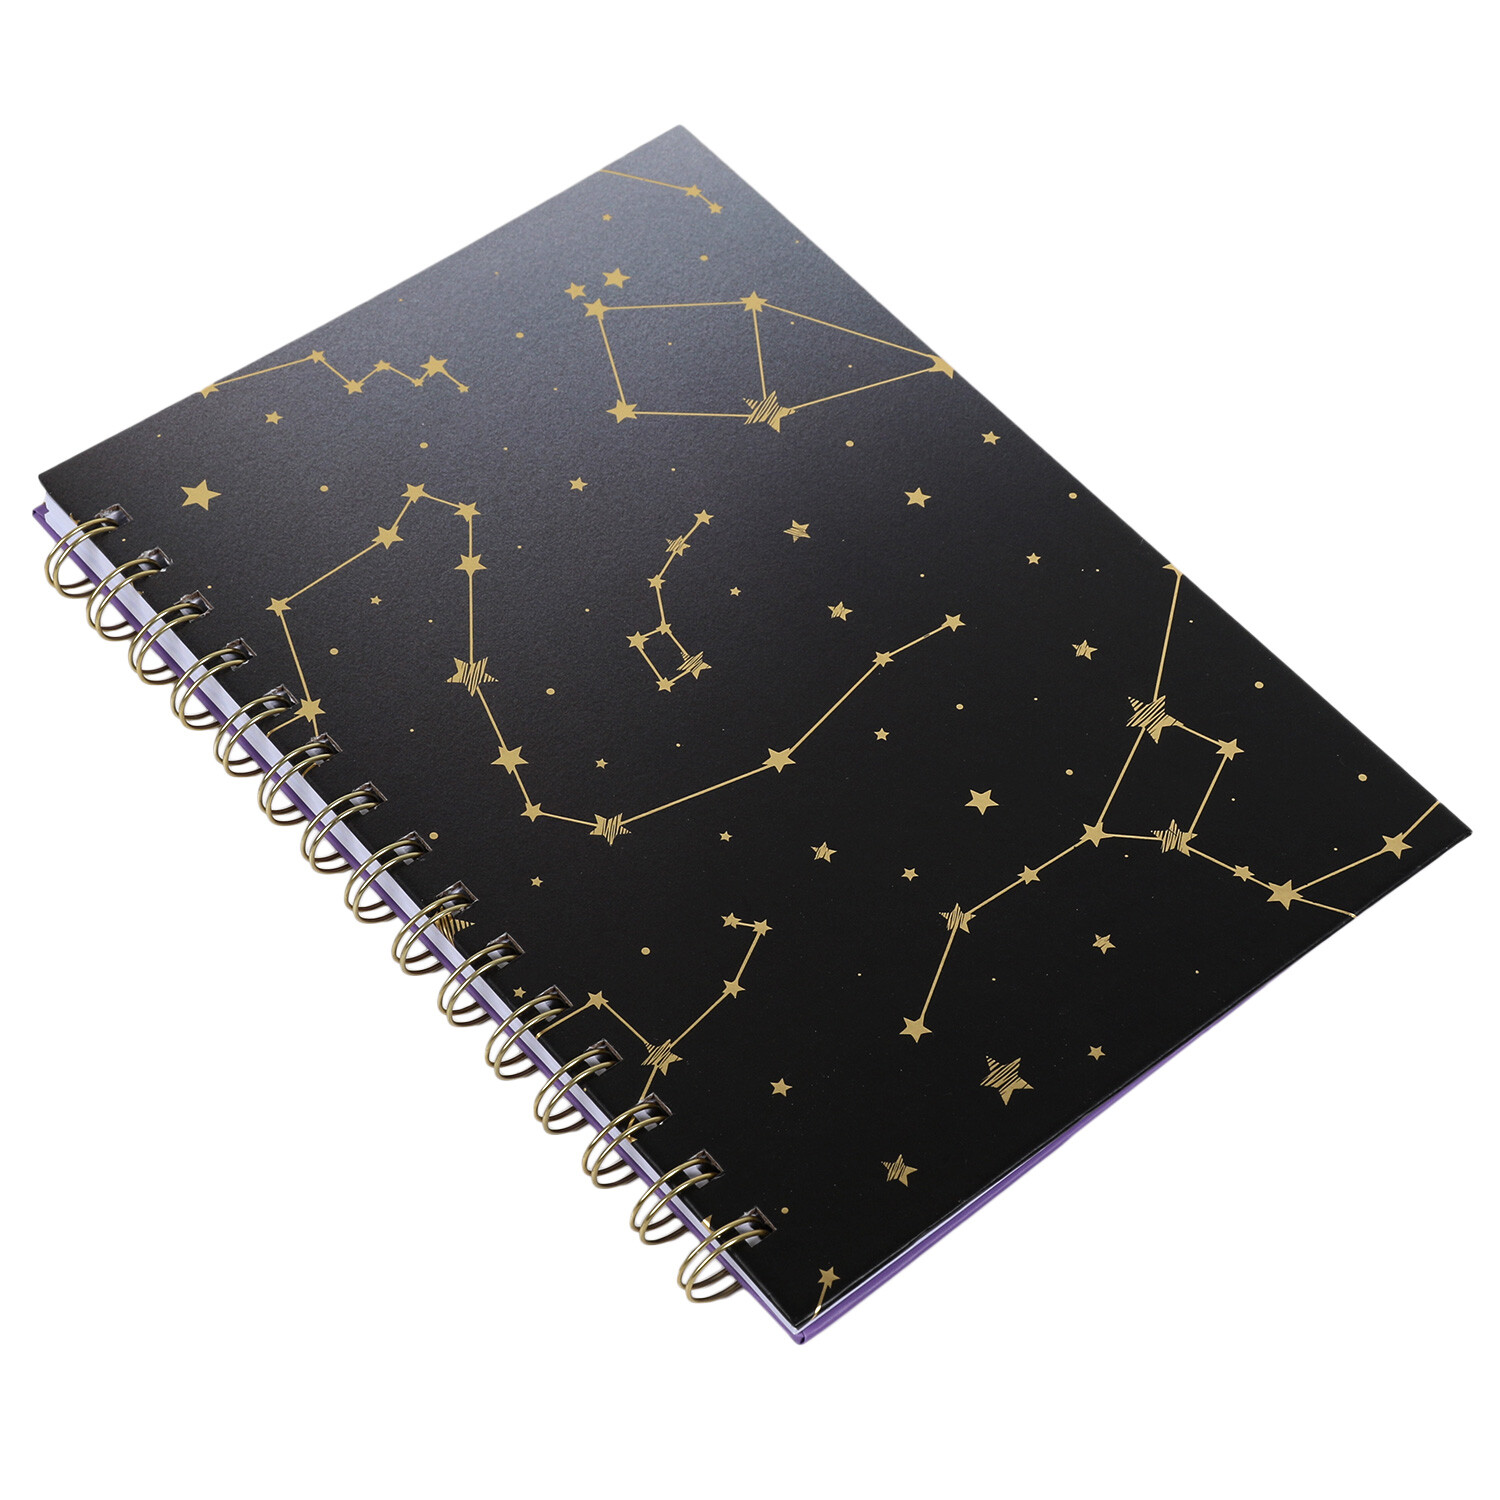 Stargazer A5 Spiral Notebook Image 2